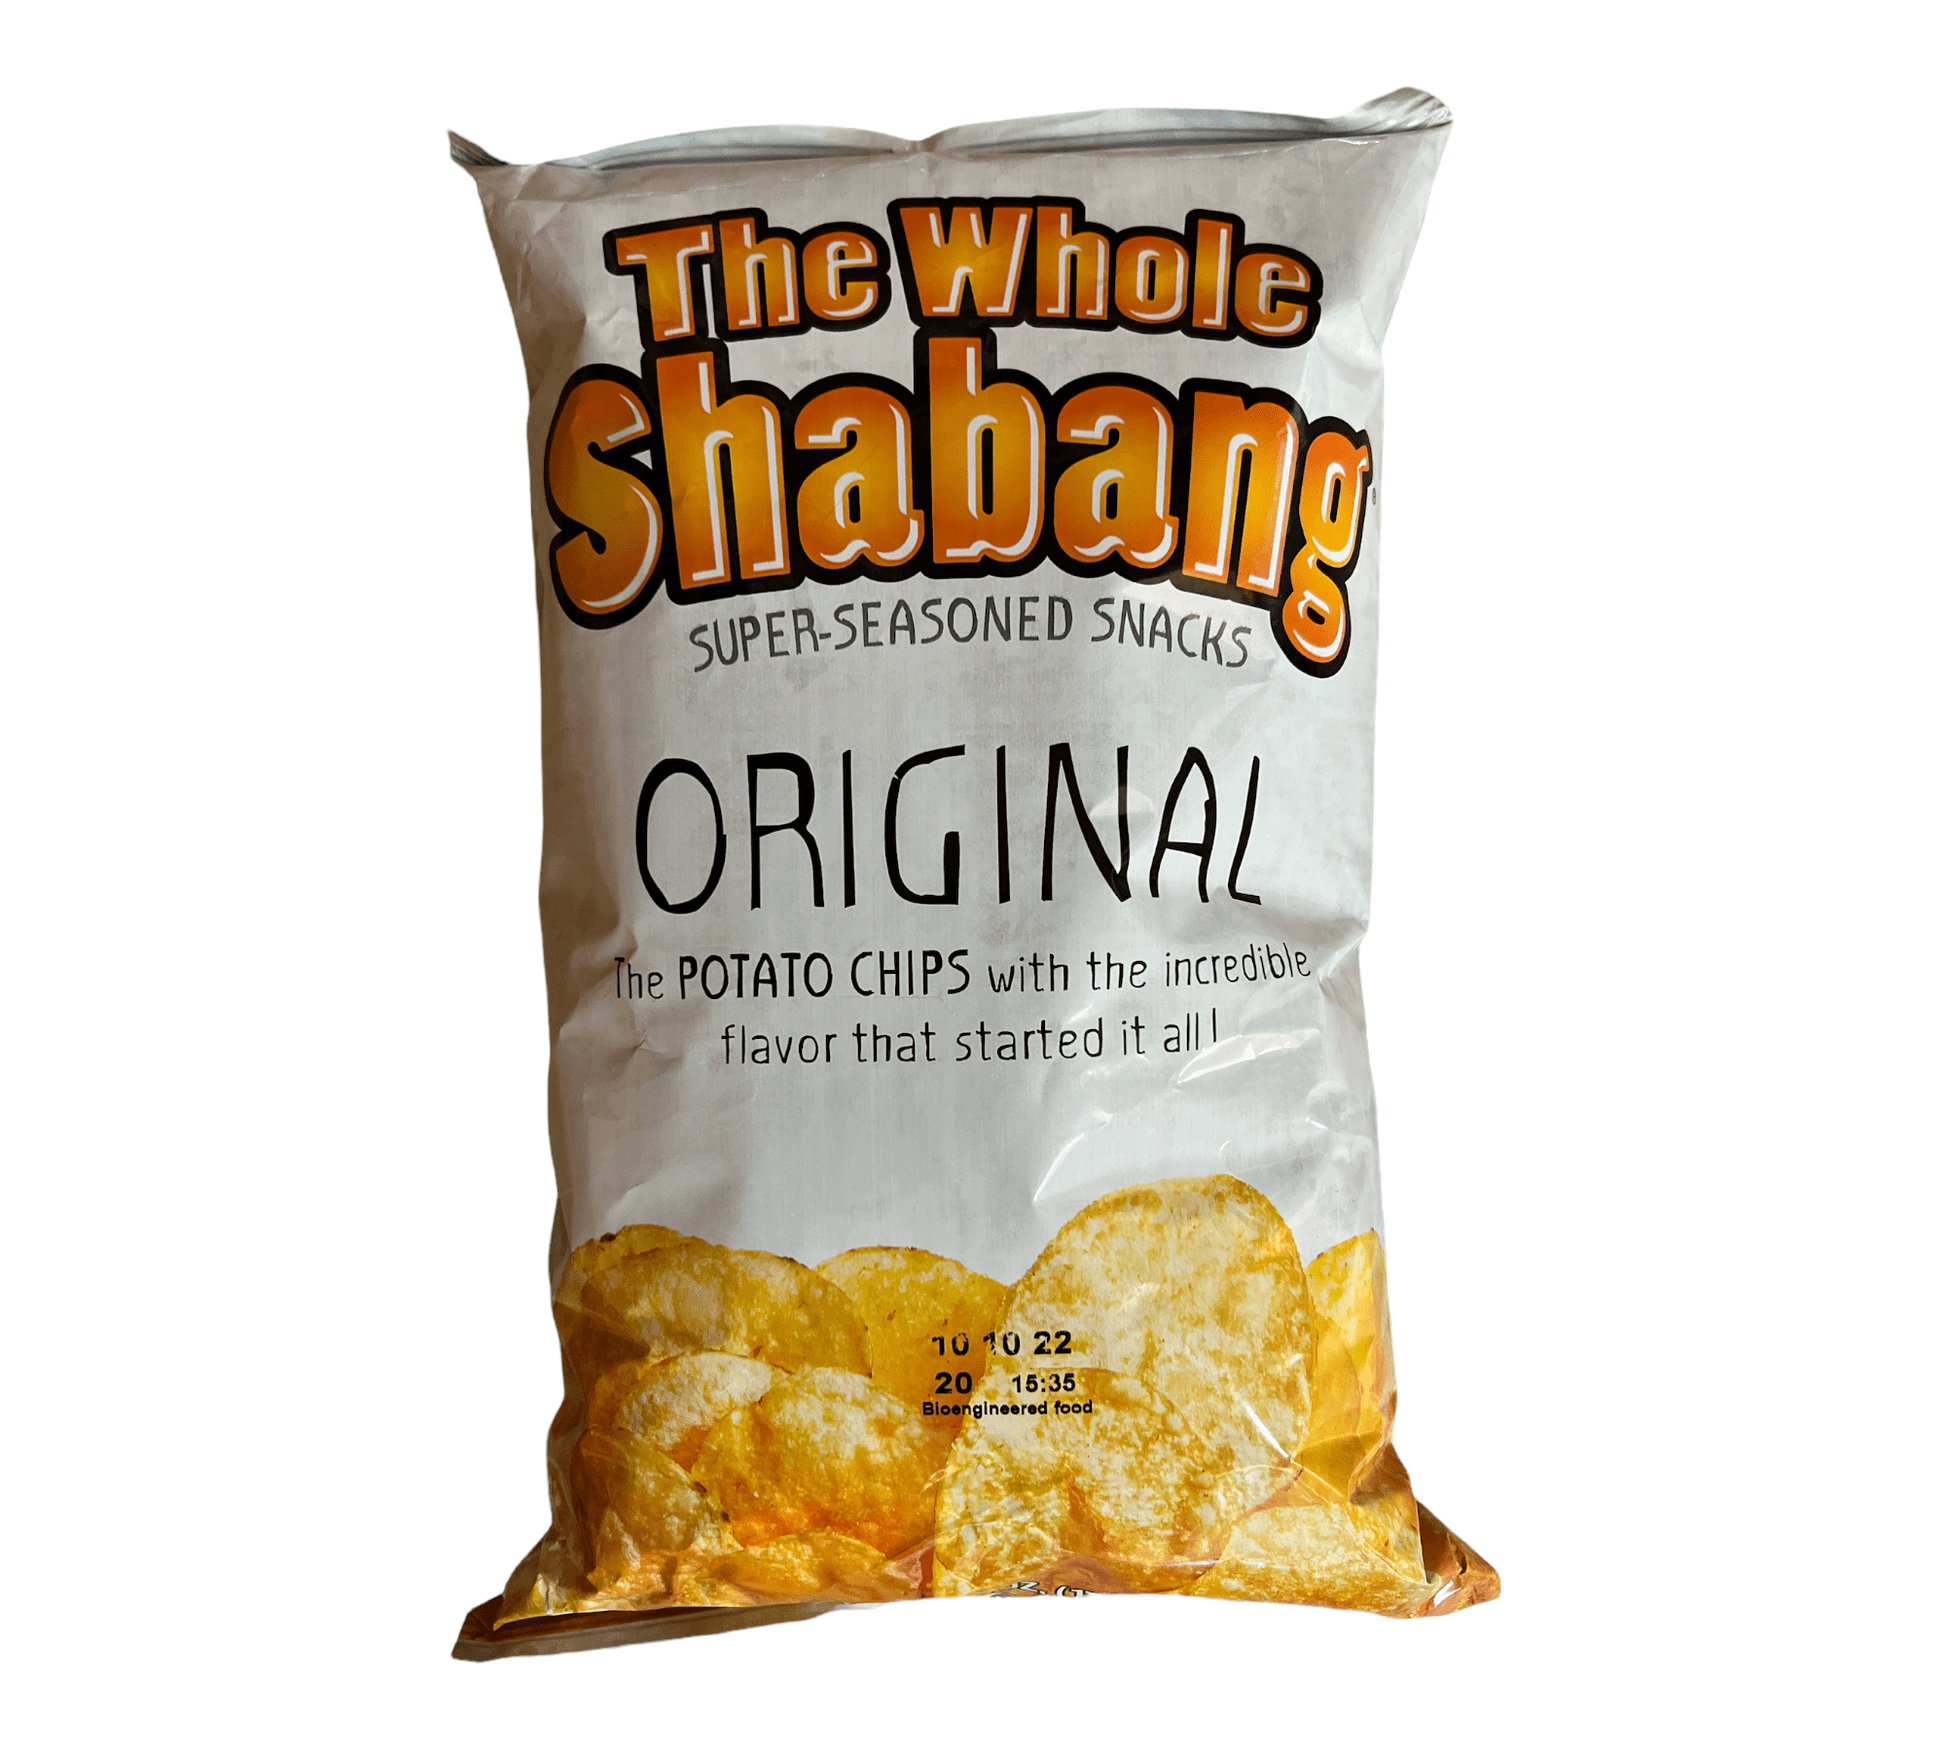 Whole Shabang Original – Pop's Exotic Sodas & Snacks